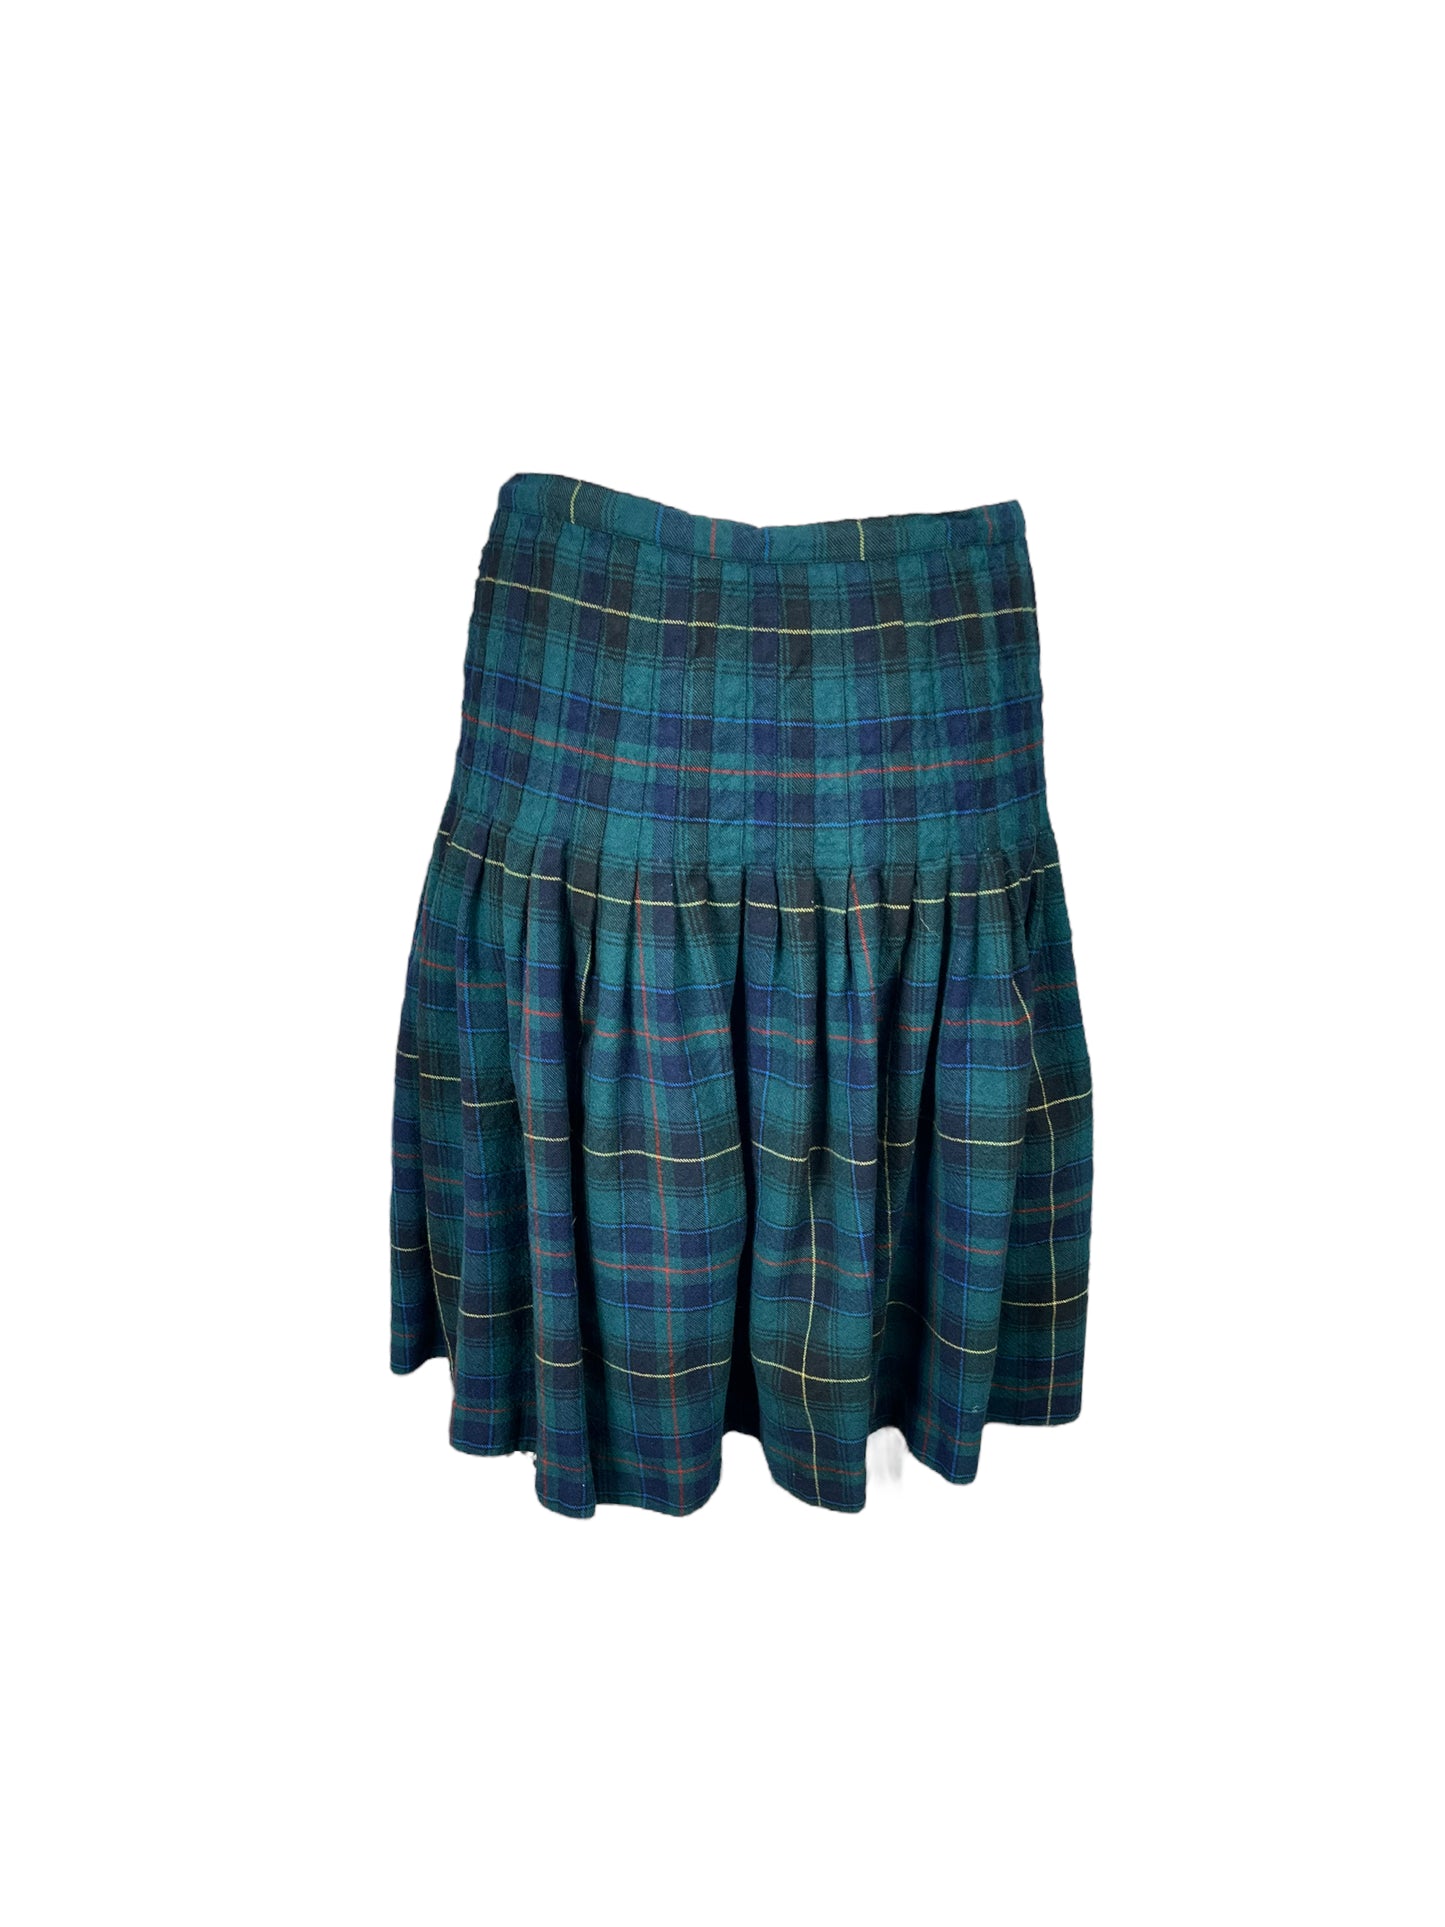 “Yves Venet” Green Plaid Skirt